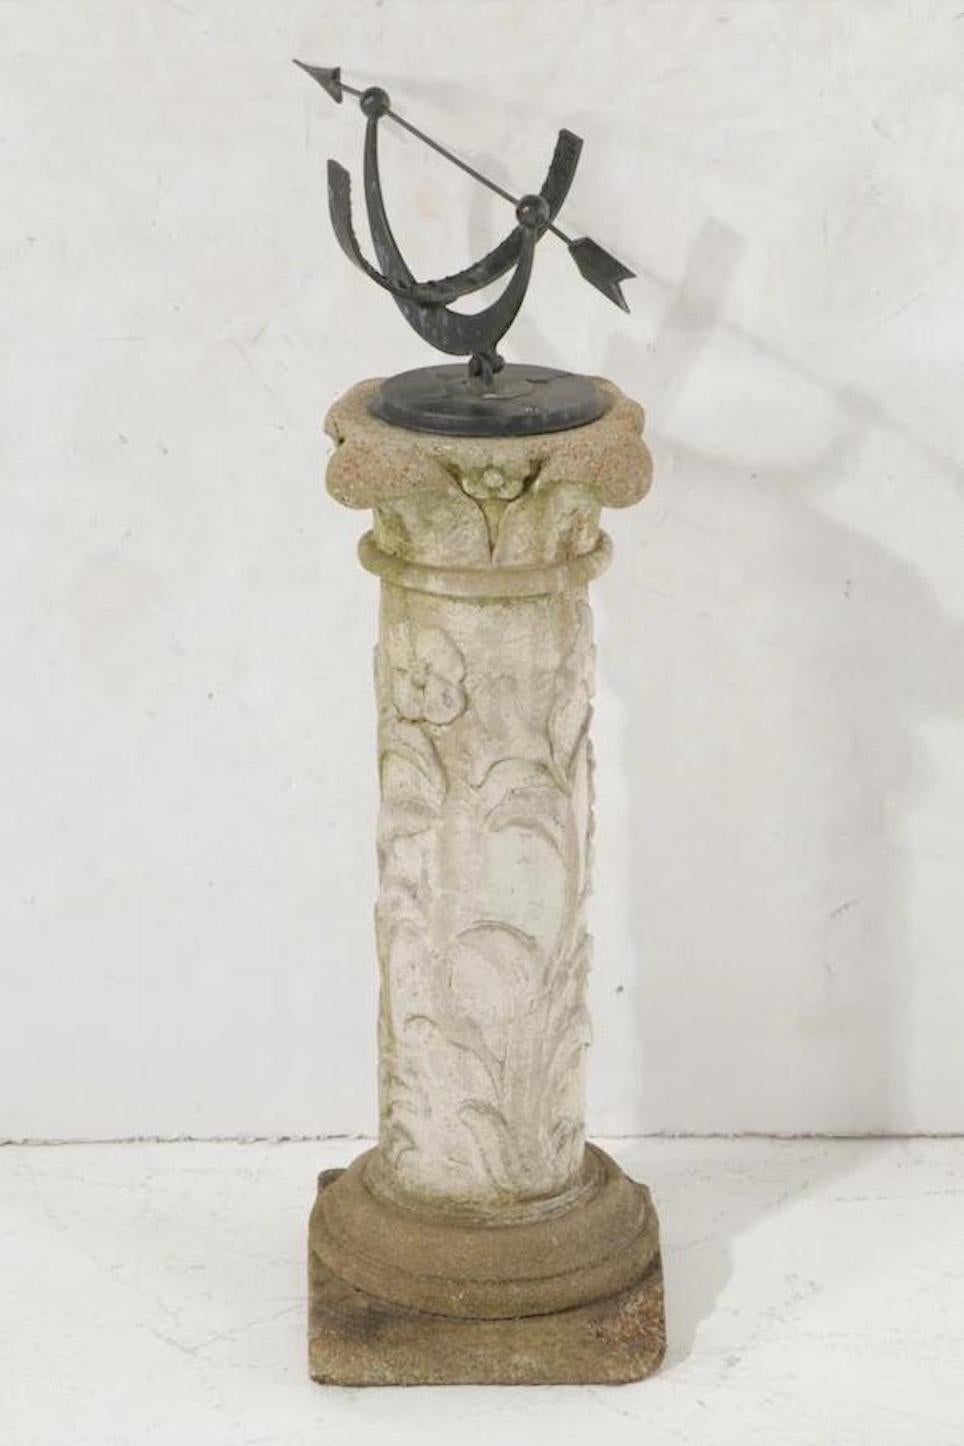 A stunning antique garden armillary sundial on pedestal

Circa 1940s

Metal armillary, atop cast stone pedestal

Measures: 20